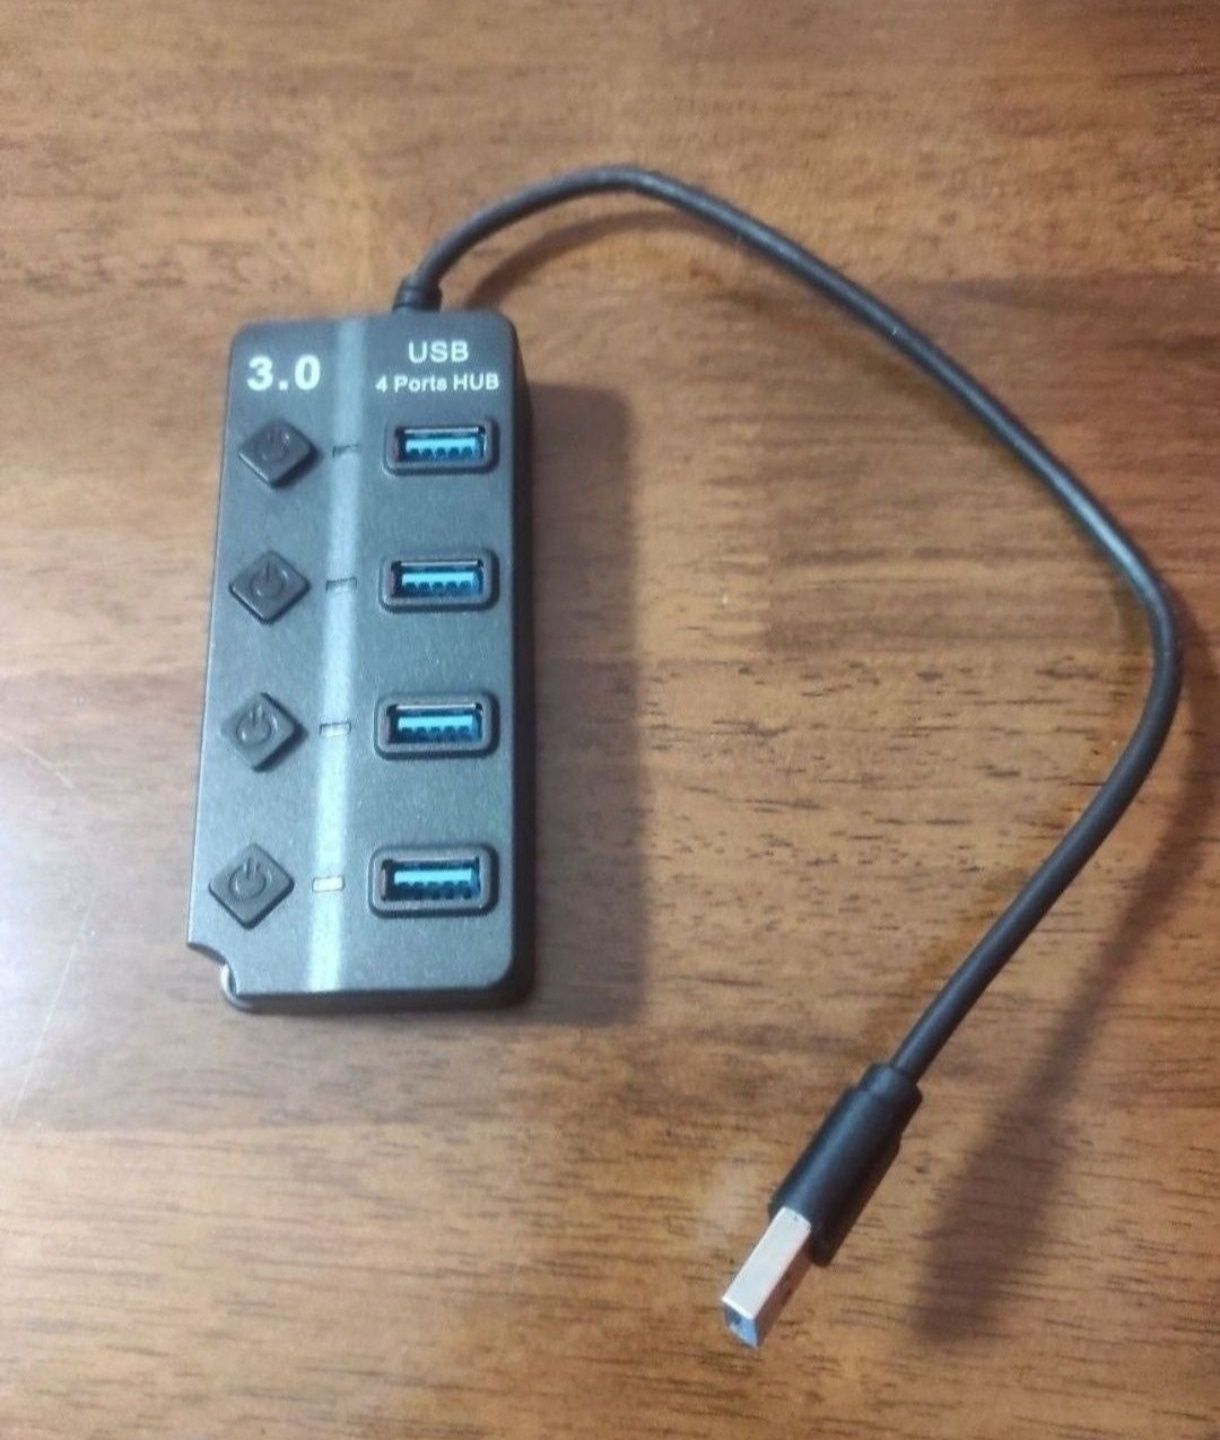 Hub USB 3.0 - 4 Portas USB 3.0, todas com interruptor e LED individual